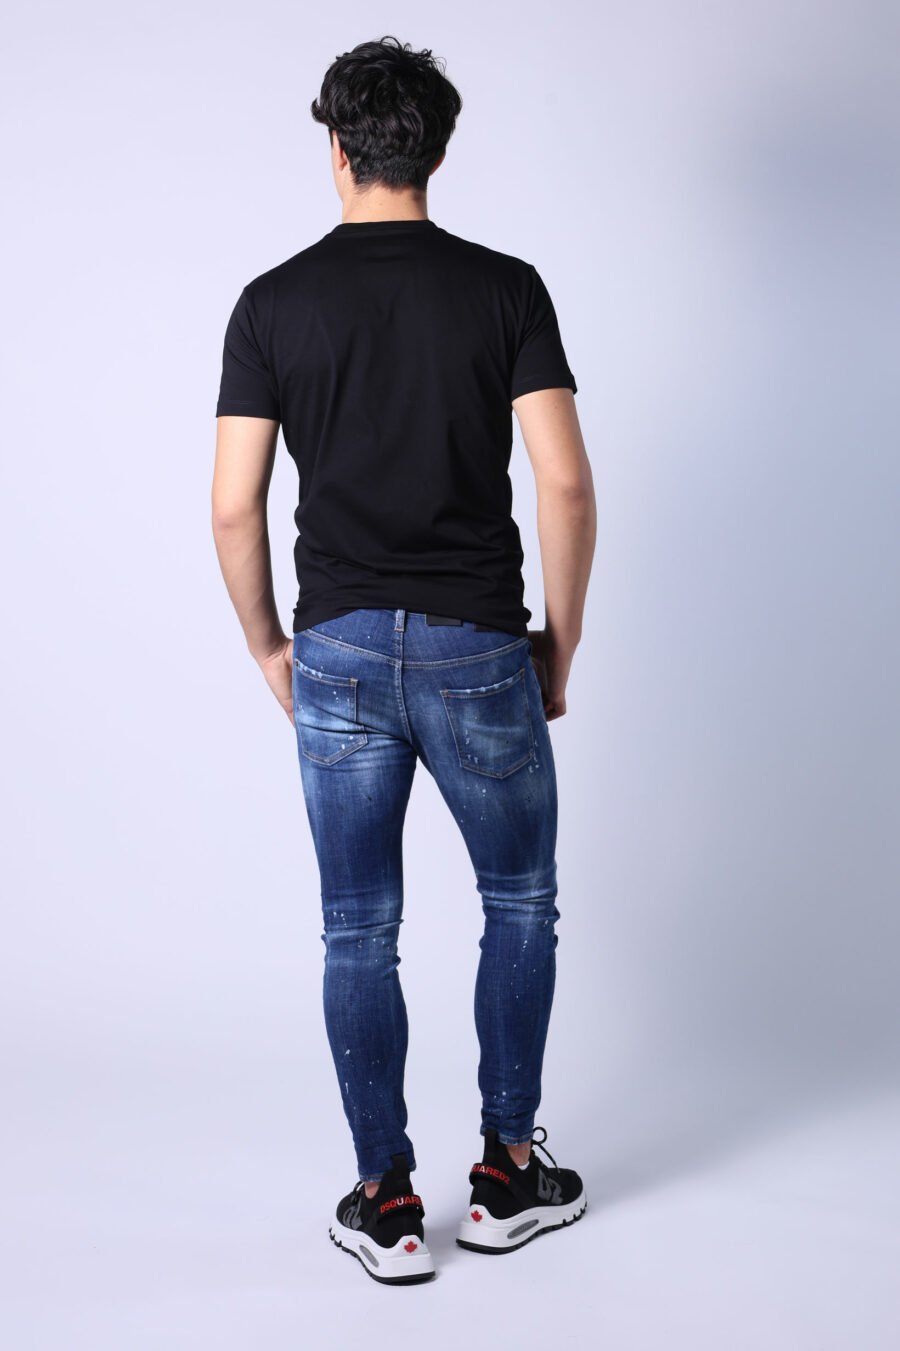 Jeans "super twinkey jean" blau ausgefranst mit schwarz gerissen - Untitled Catalog 05290